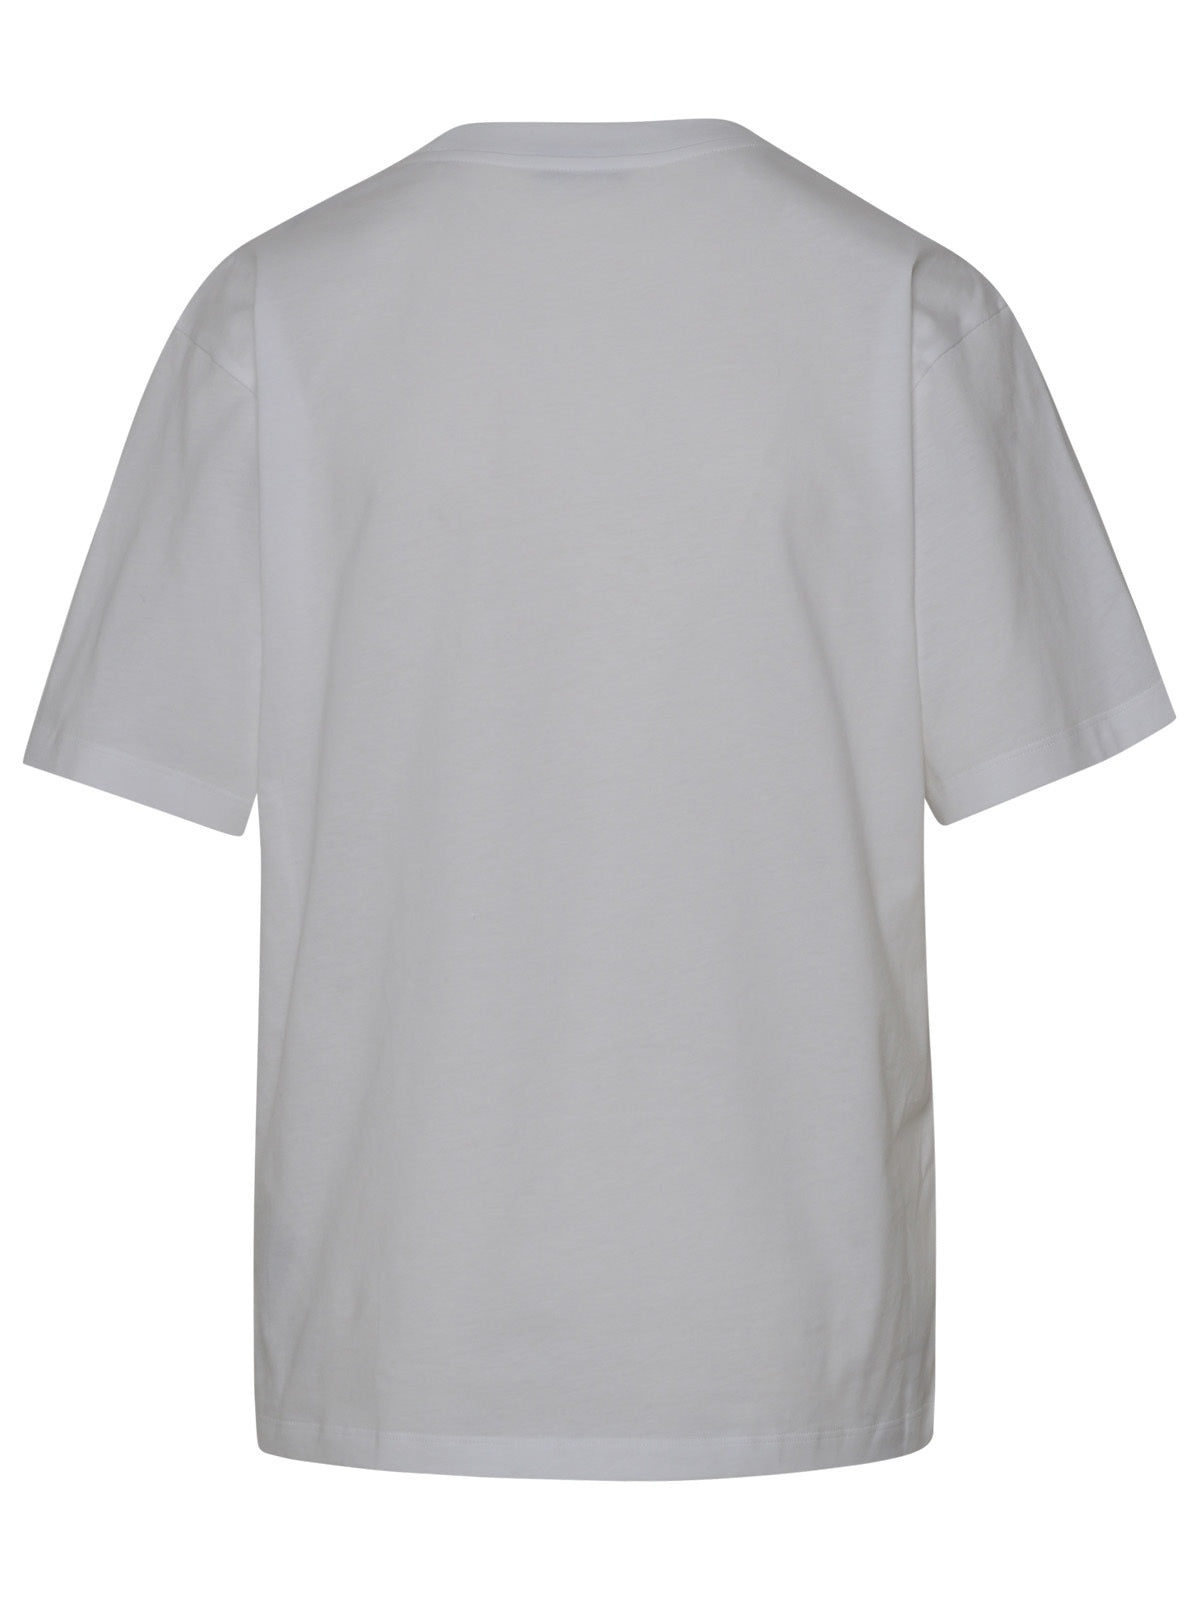 Moncler Woman White Cotton T-Shirt - 3